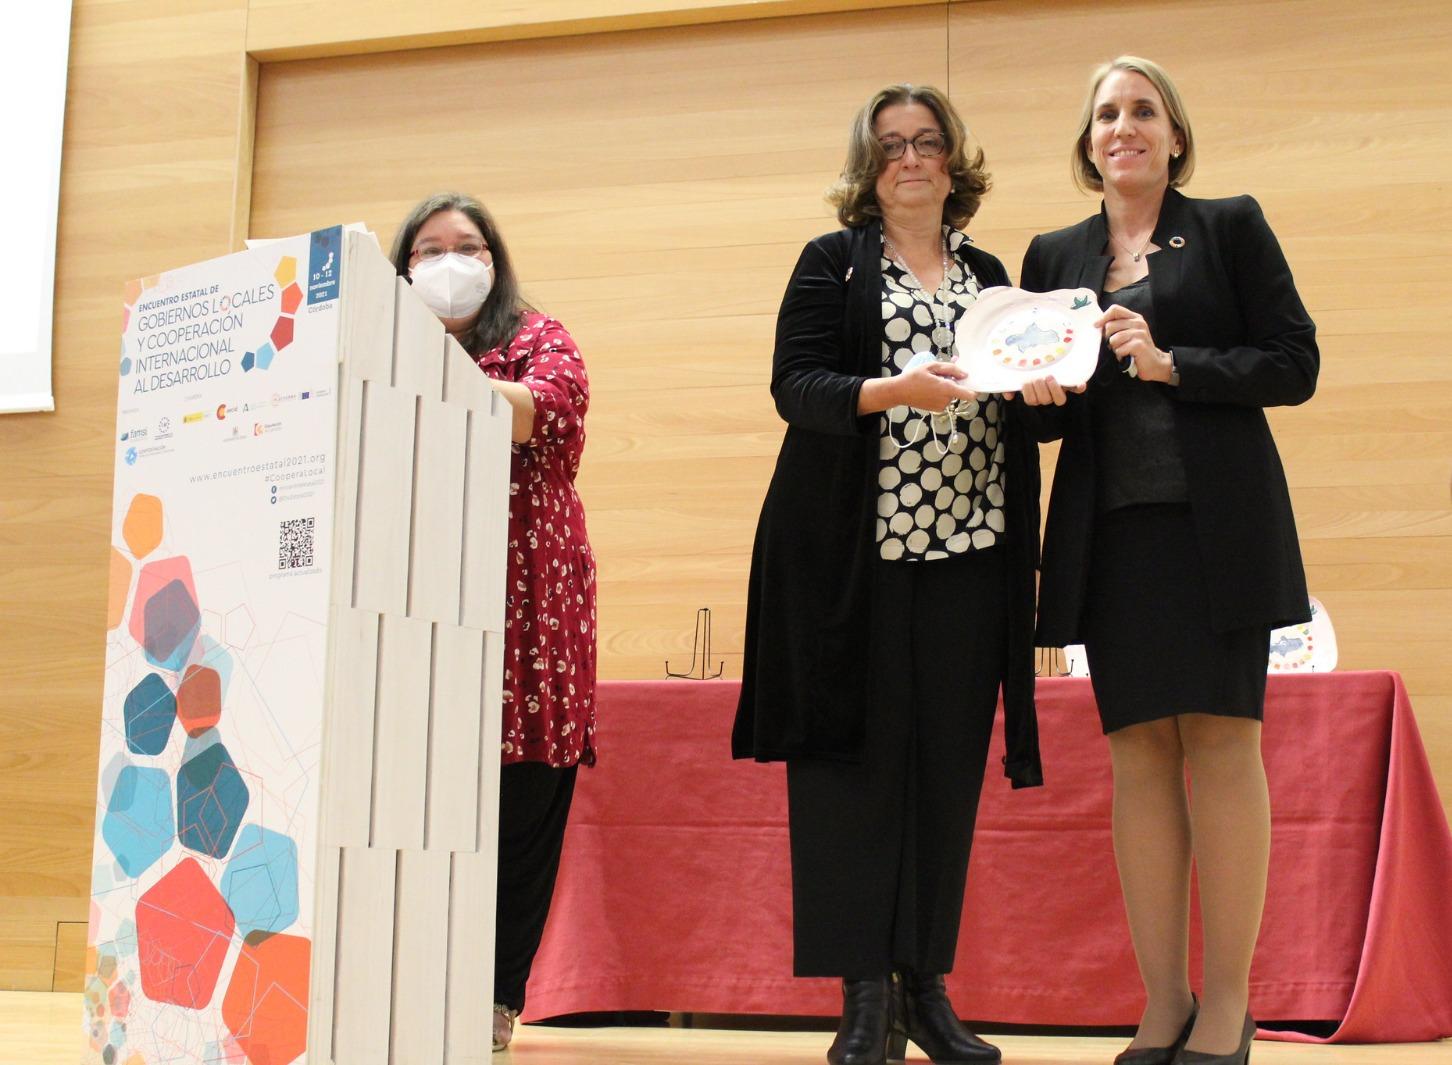 La Fundación “Estrategias” recibe de manos de FAMSI el reconocimiento ODSLocal Andalucía por su labor en la localización de la Agenda 2030 en la provincia de Jaén